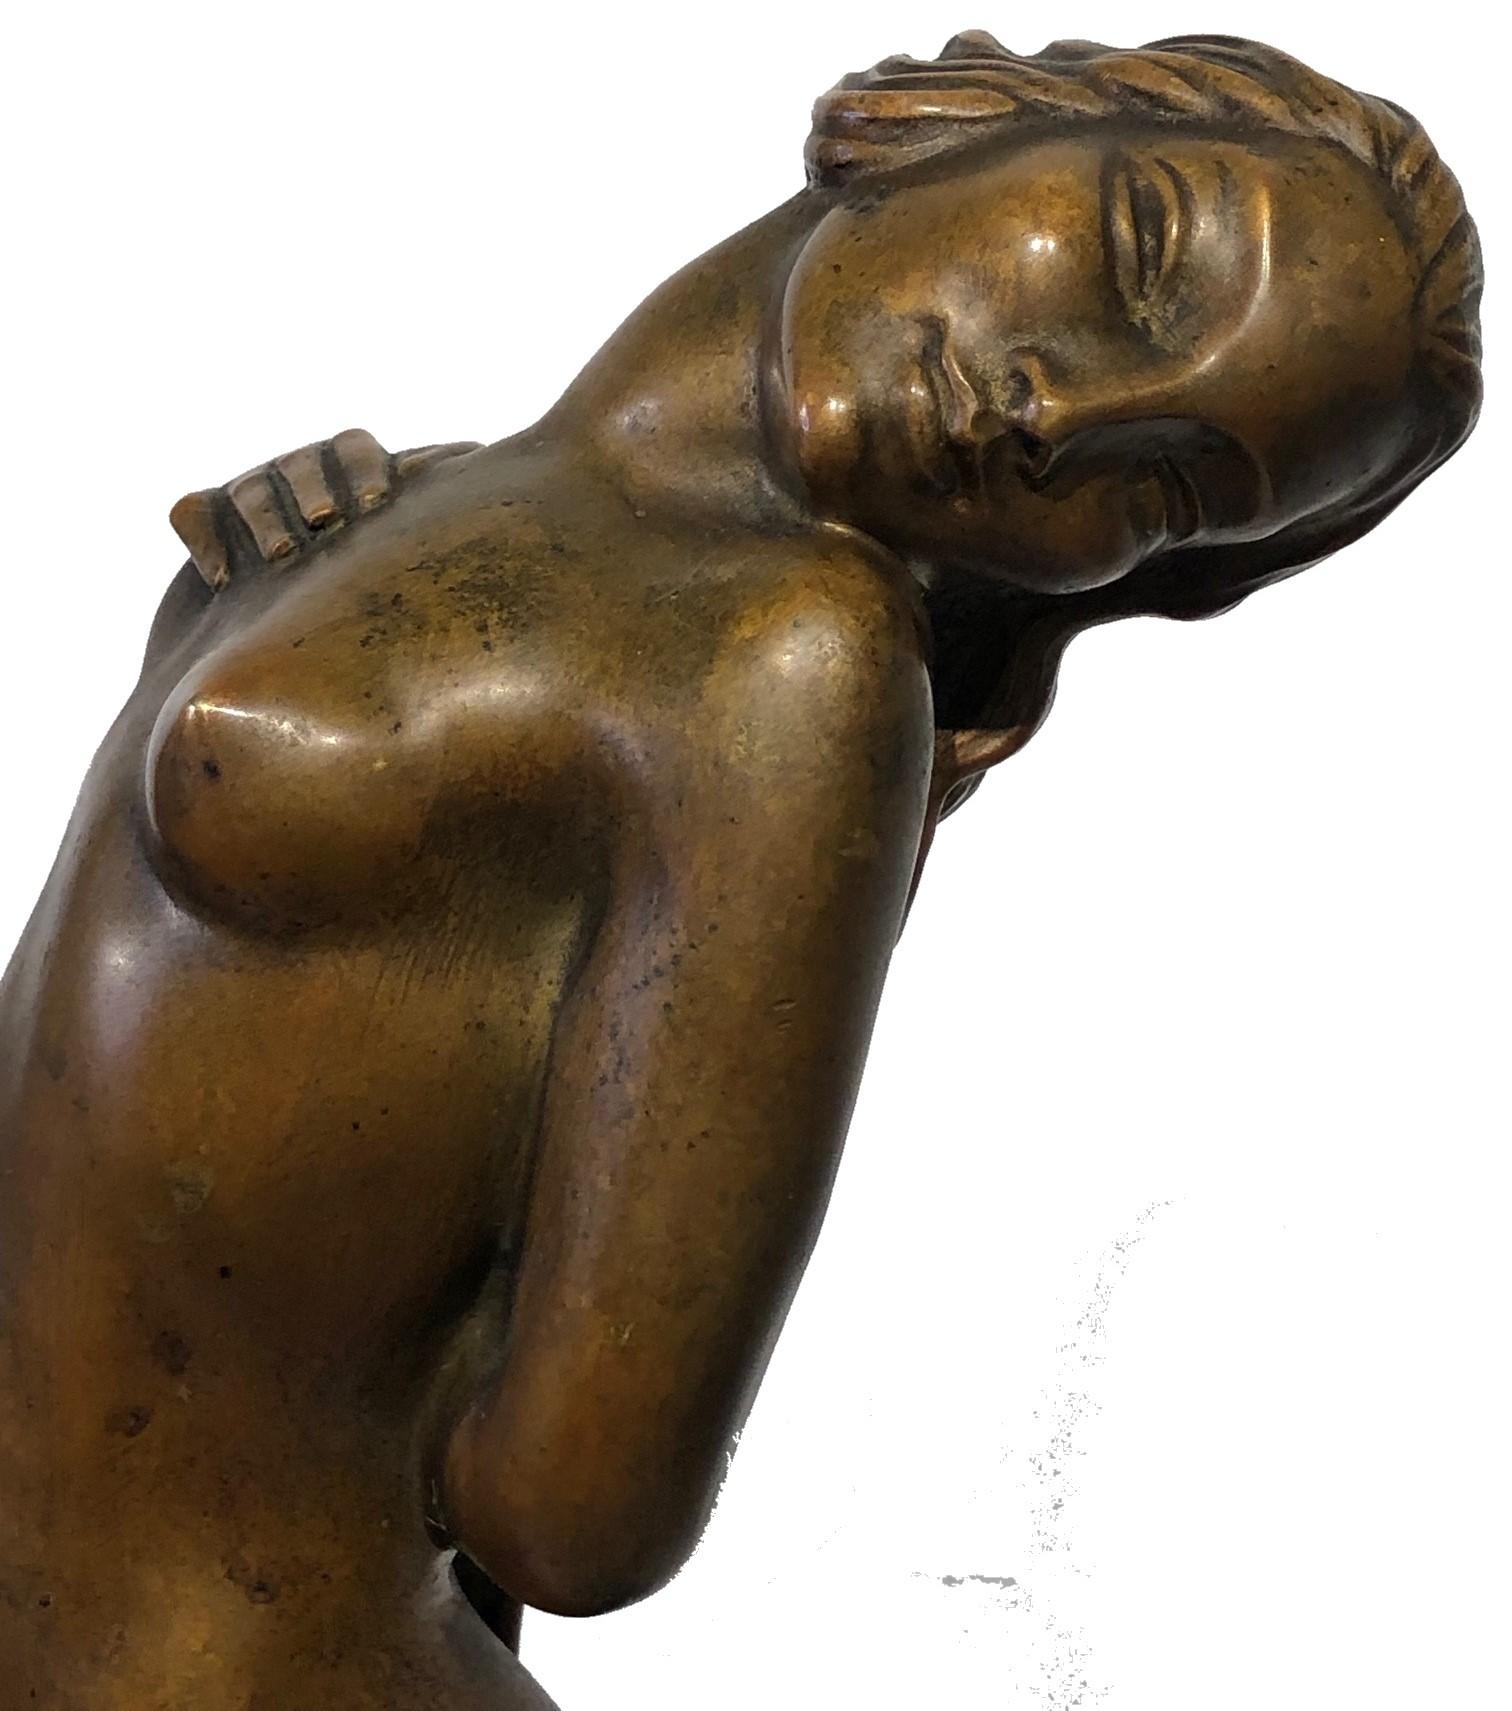 À PROPOS DE
Cette magnifique sculpture en bronze patiné sur un socle original en granit noir représentant une jeune femme nue émergeant de l'eau a été créée par Joseph C.C. Motto (américain, 1891-1965) vers 1920 et constitue un exemple de référence